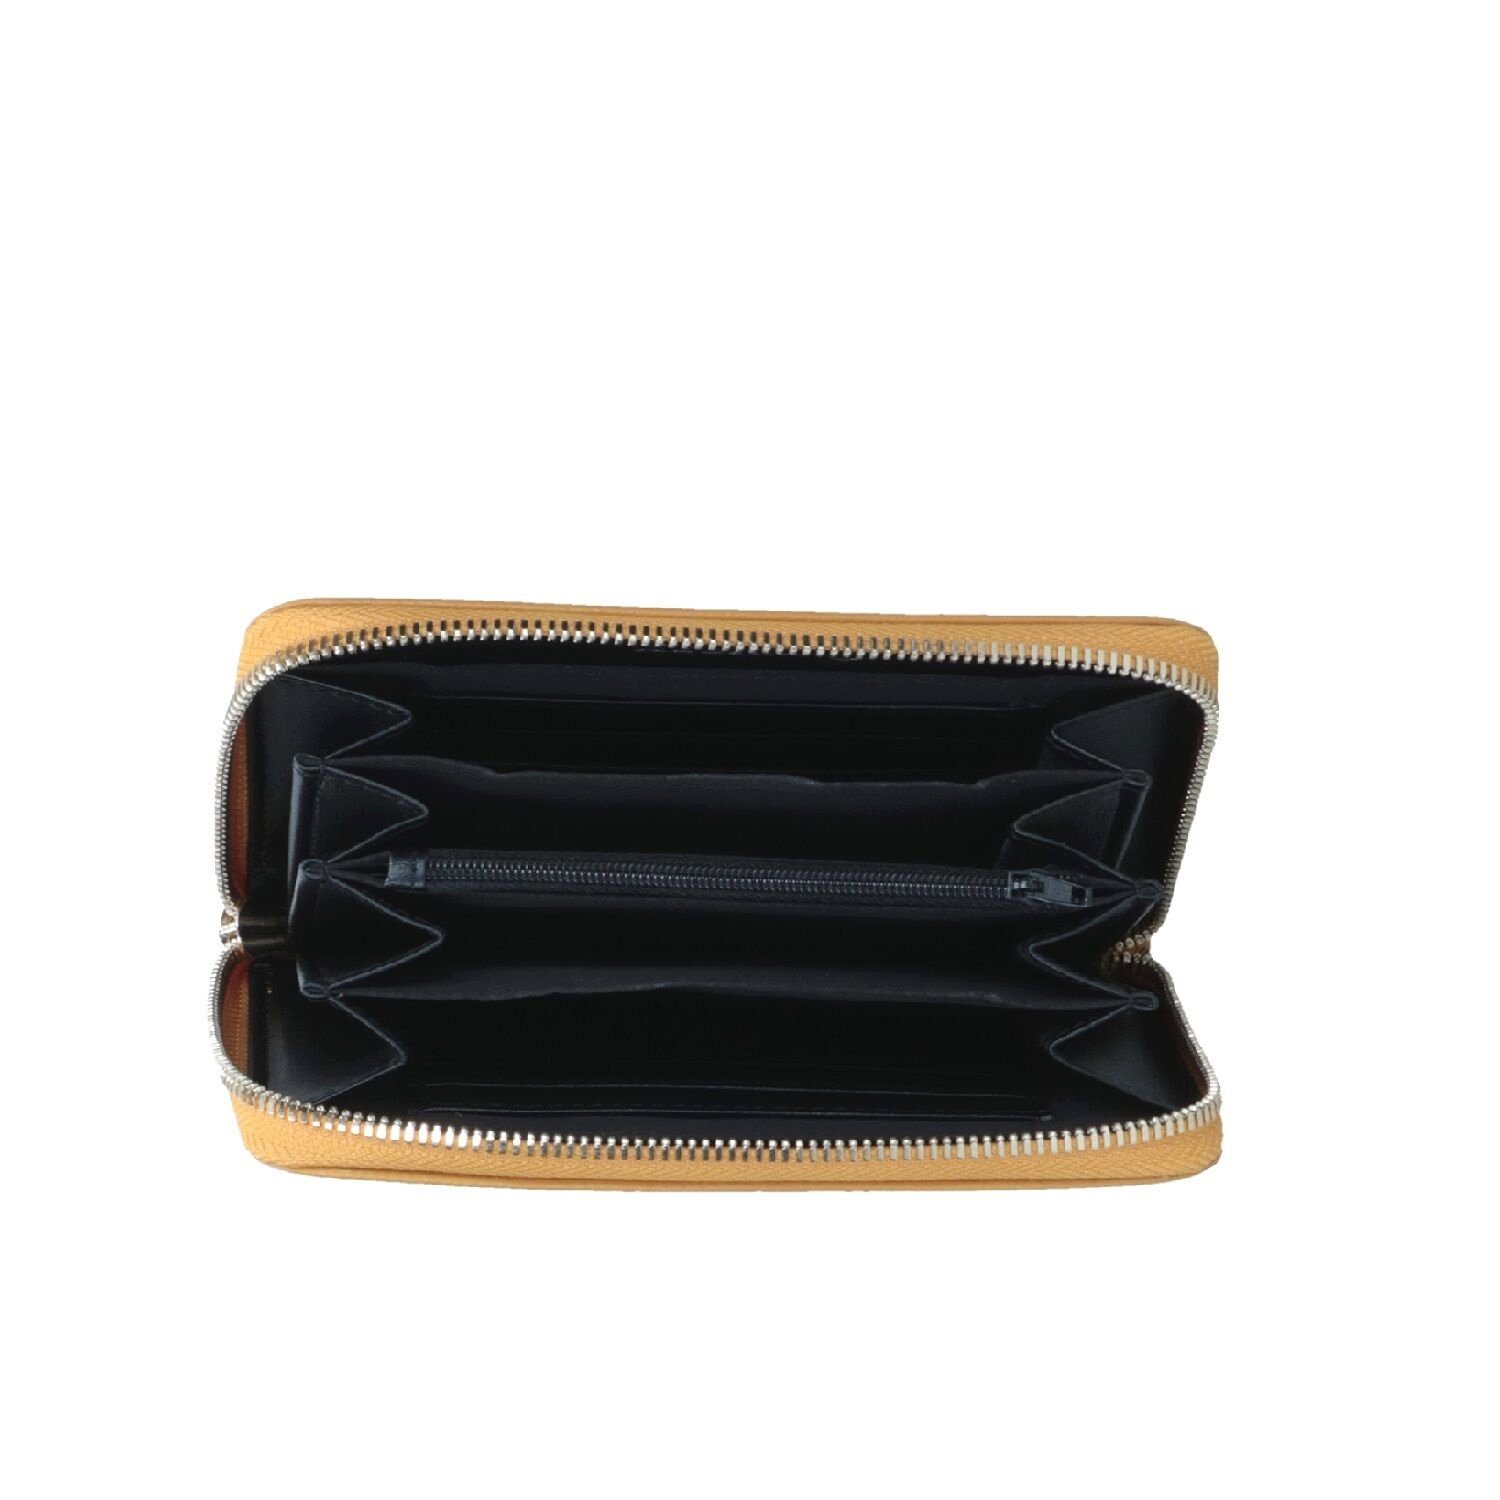 Verstellbare Träger Tasche mustard Geldbörse, C C Schulter Melina Melina Umhängetasche Echtleder